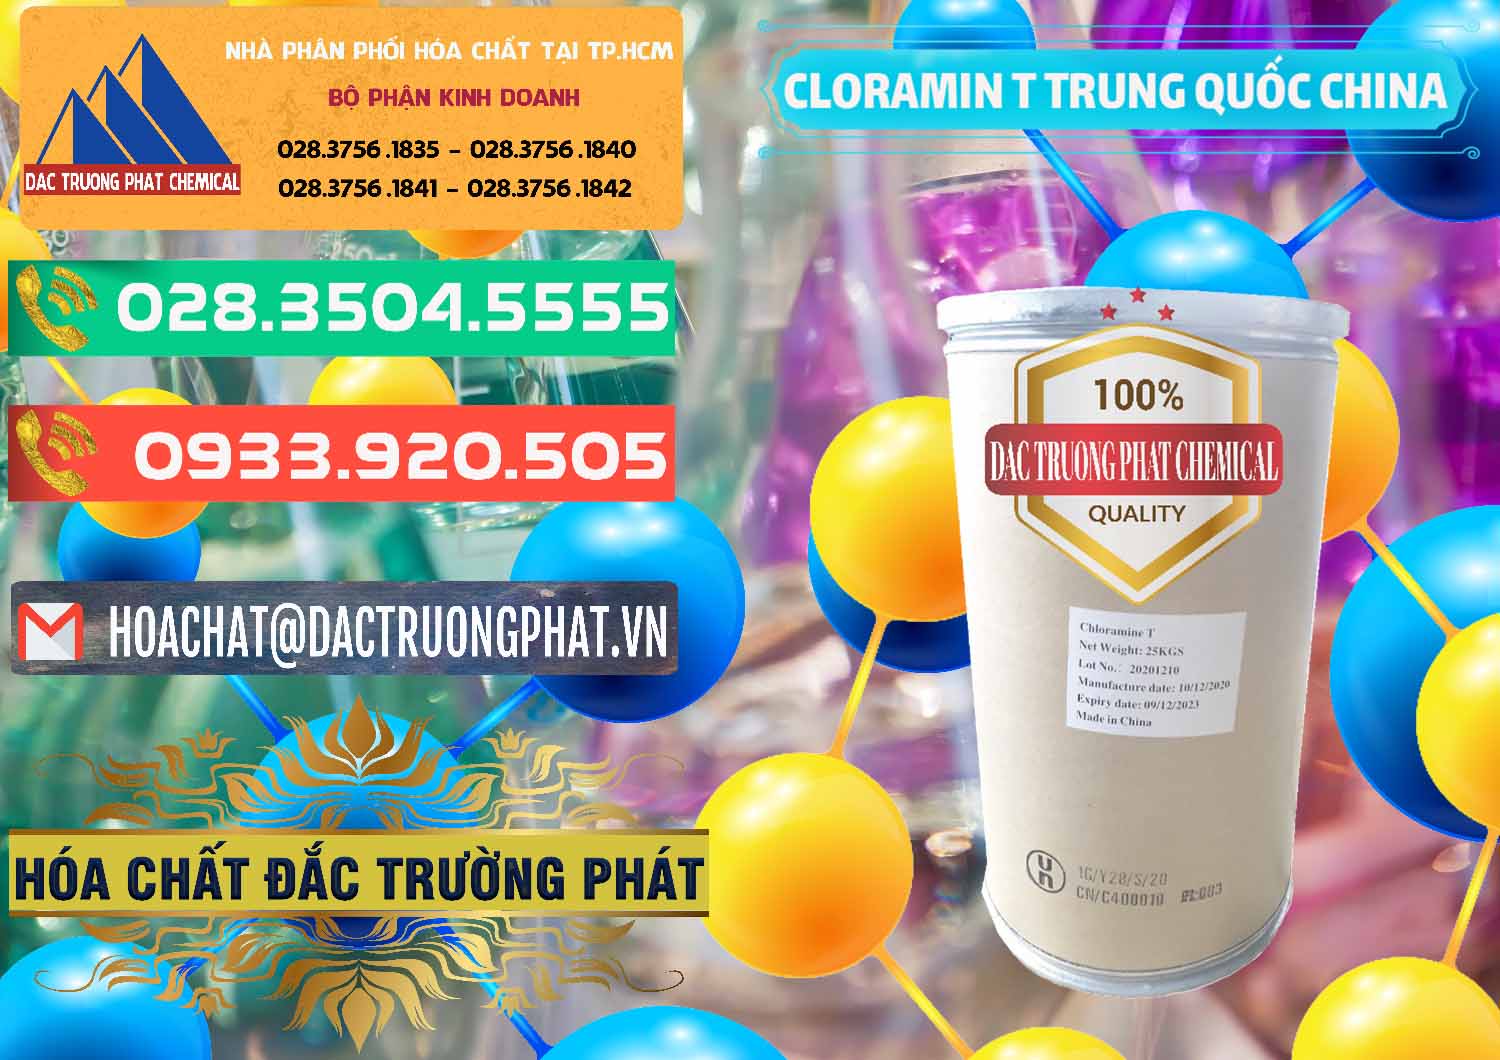 Cty chuyên bán _ cung ứng Cloramin T Khử Trùng, Diệt Khuẩn Trung Quốc China - 0301 - Cty cung cấp - kinh doanh hóa chất tại TP.HCM - congtyhoachat.com.vn